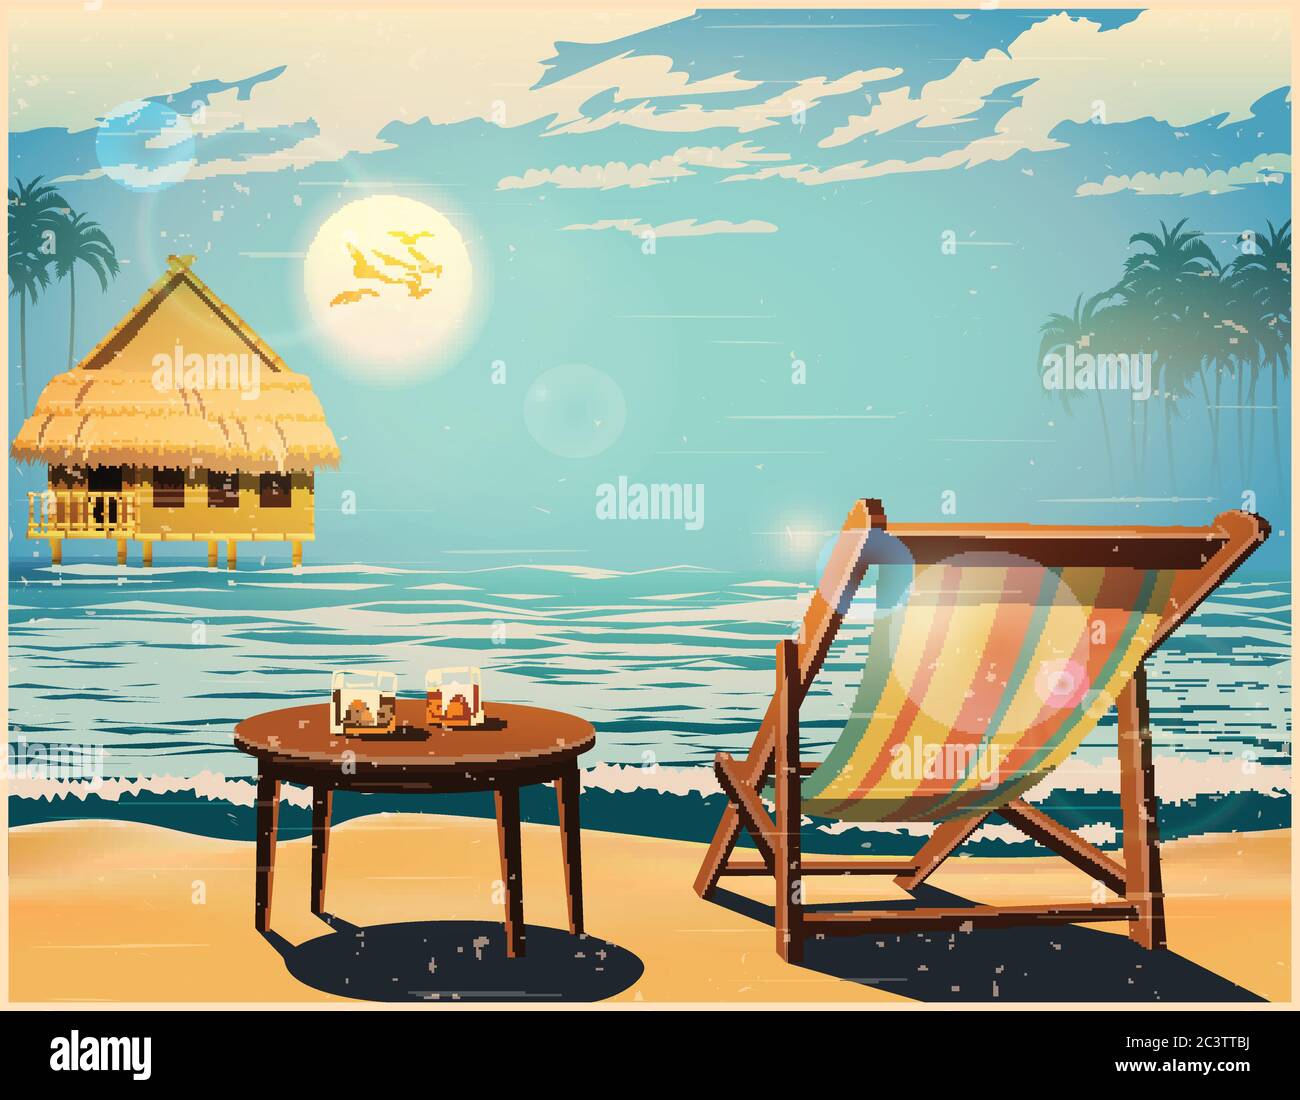 Chaiselongue, Bungalow, Tisch und zwei Gläser Whiskey am Meer gegen den Sonnenuntergang im Retro-Poster-Stil Stock Vektor